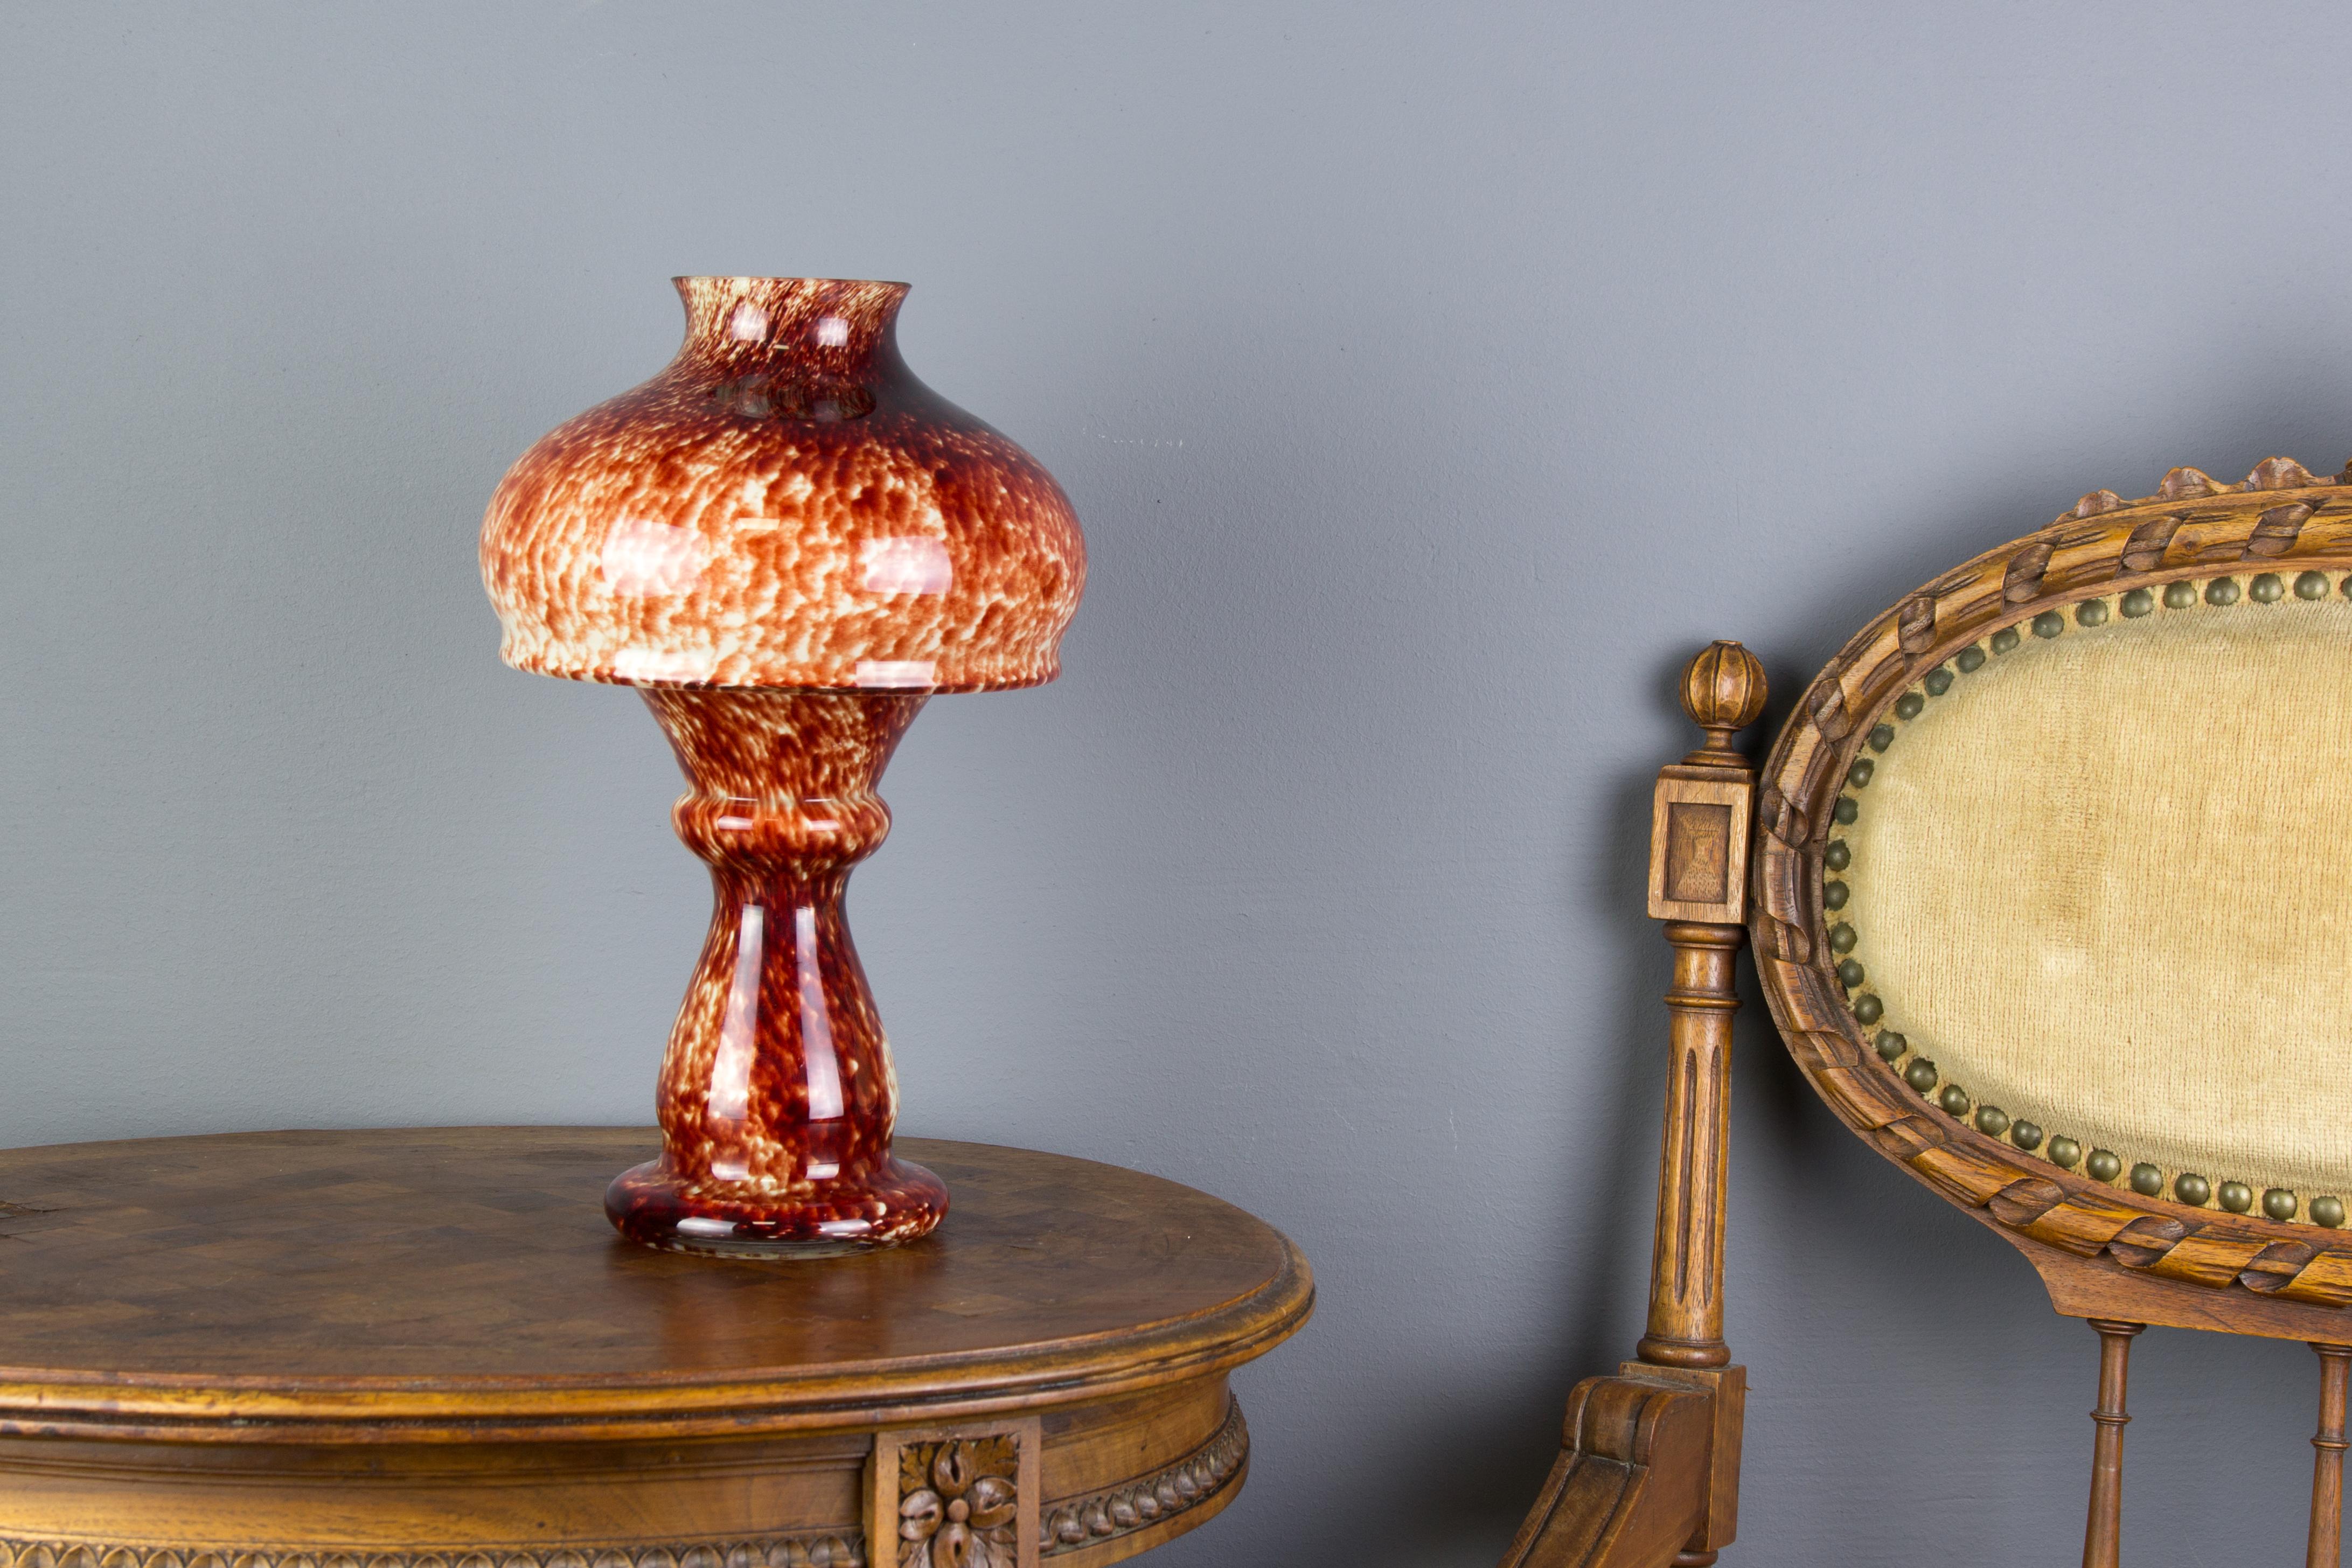 Entzückender roter Kunstglaspilz in Form eines Teelichthalters oder einer Kerzenlampe, bestehend aus zwei Teilen und mit weißem, undurchsichtigem Inneren. Kann auch als Vase verwendet werden.
Abmessungen: Höhe 27 cm / 10.62 in, Durchmesser 15 cm /